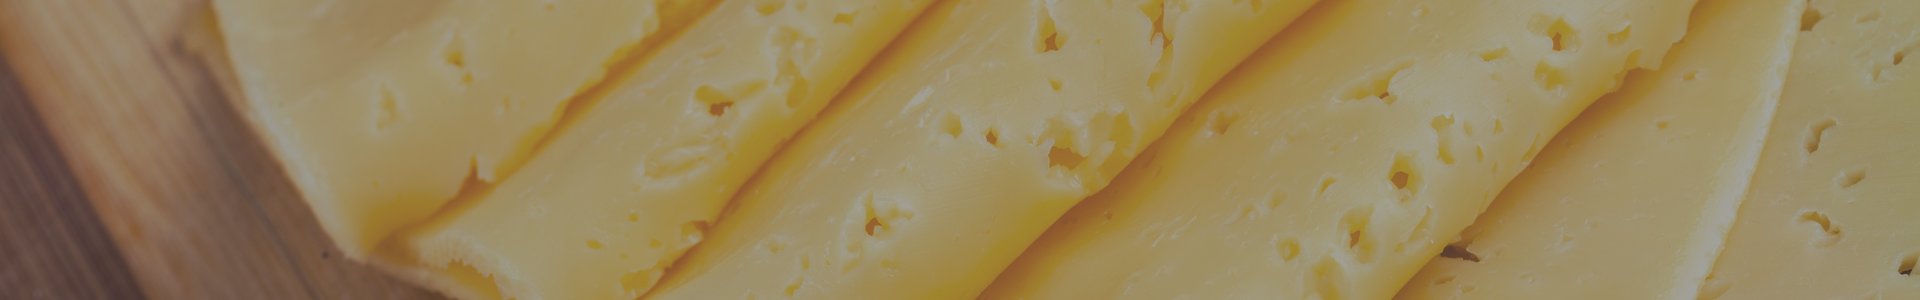 Sobre quesos contaminados con listeria monocytogenes